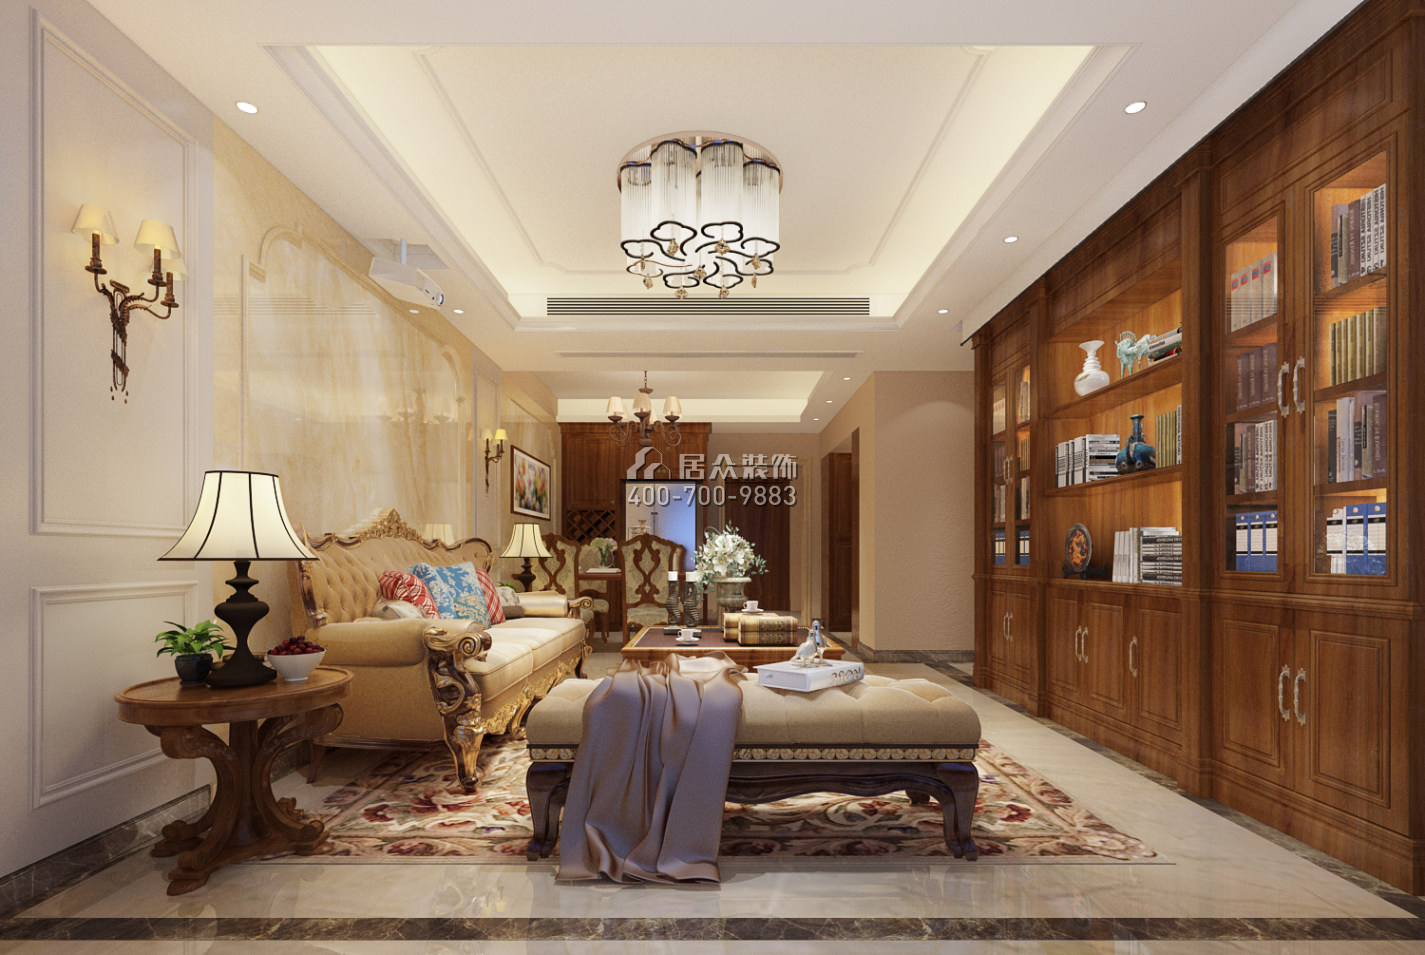 华润城二期120平方米美式风格平层户型客厅装修效果图